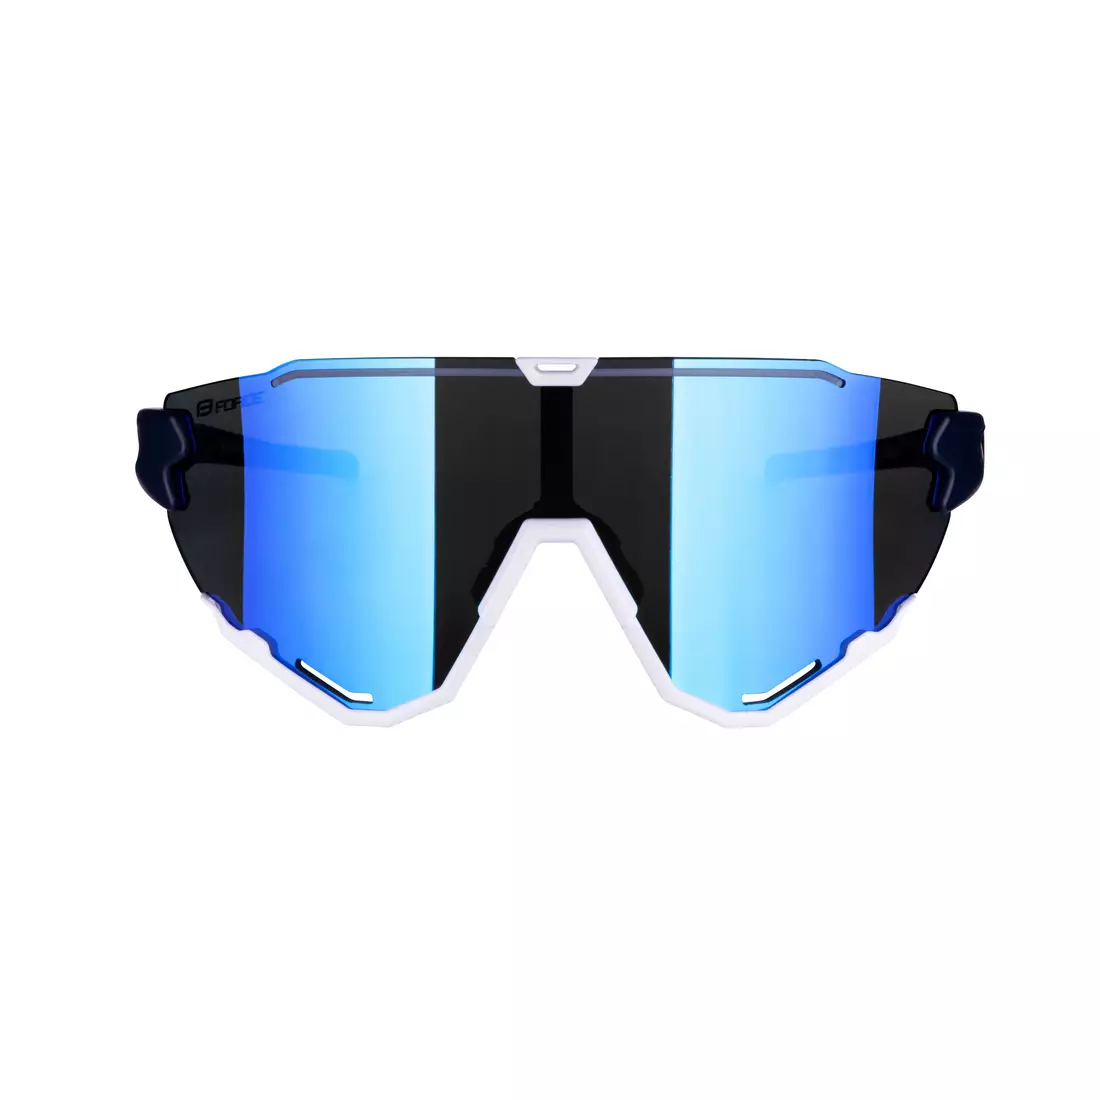 FORCE kerékpáros / sport szemüveg CREED kék és fehér, 91183